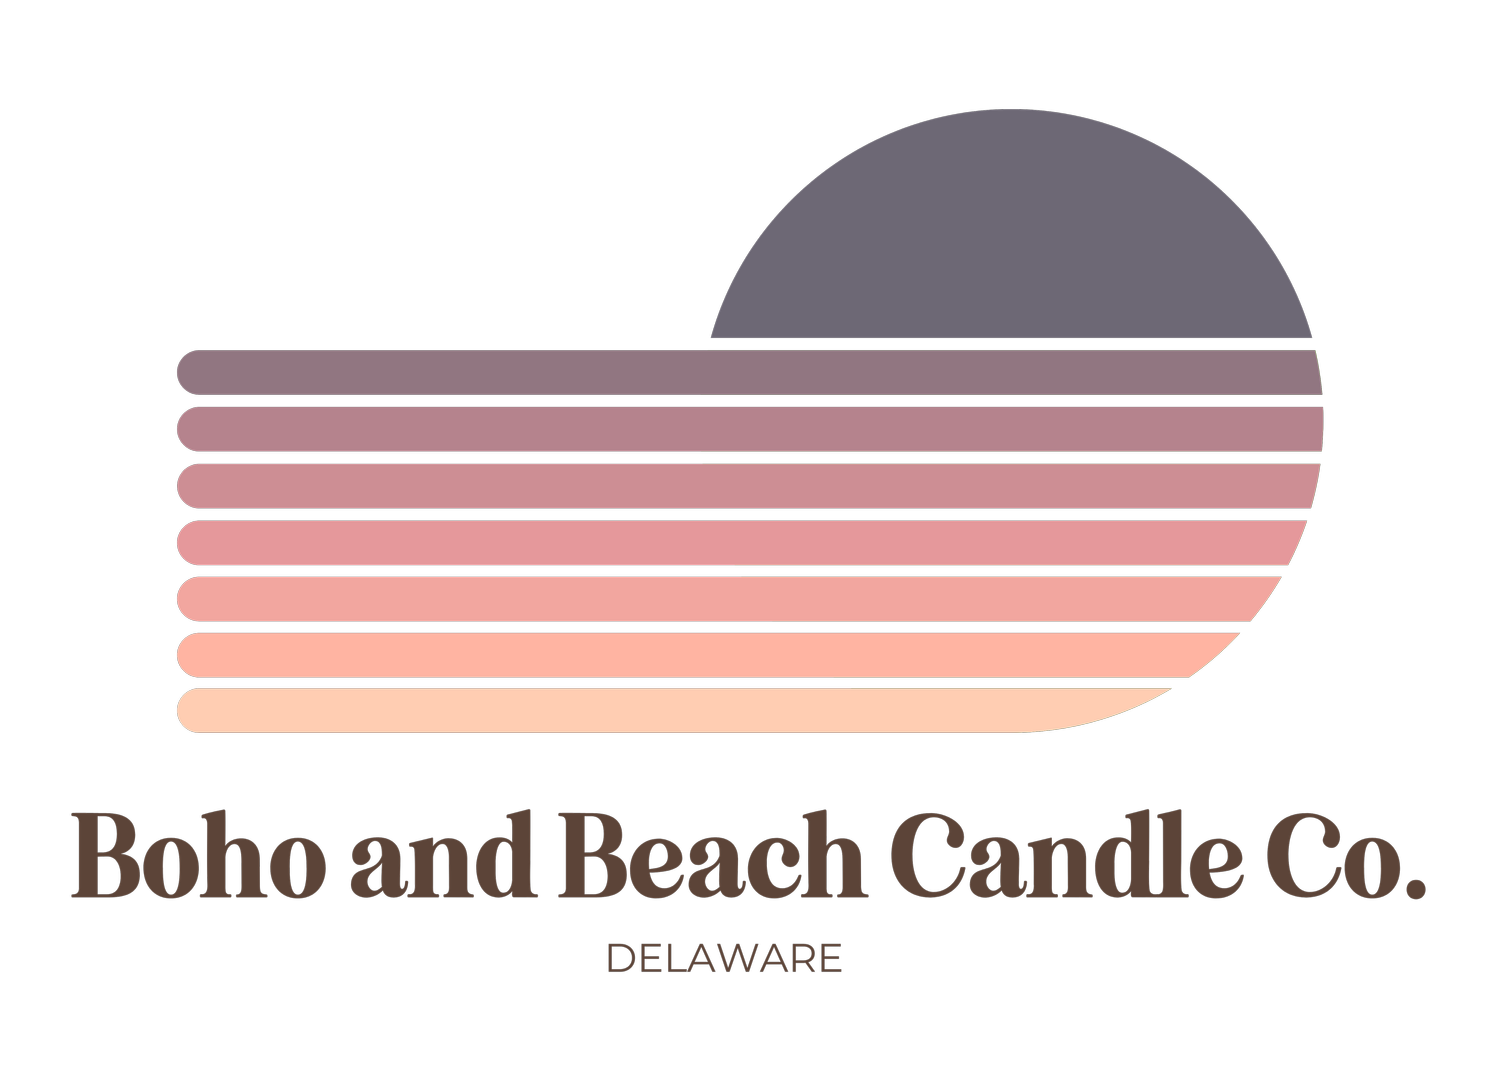 Boho and Beach Candle Co.